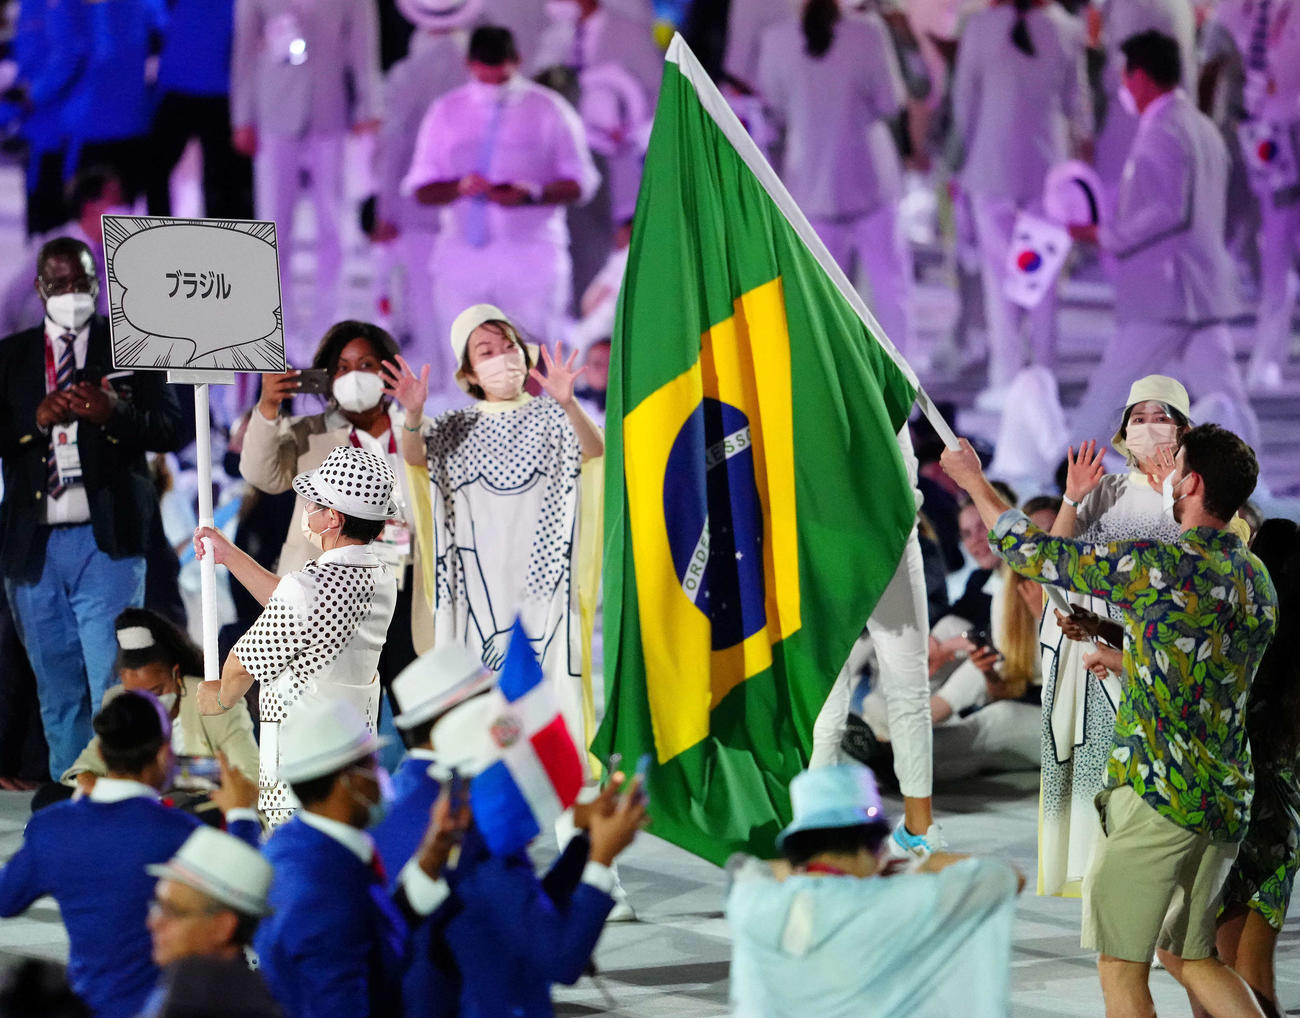 東京五輪開会式で入場するブラジルのプラカードはカタカナで国名が記される（撮影・江口和貴）